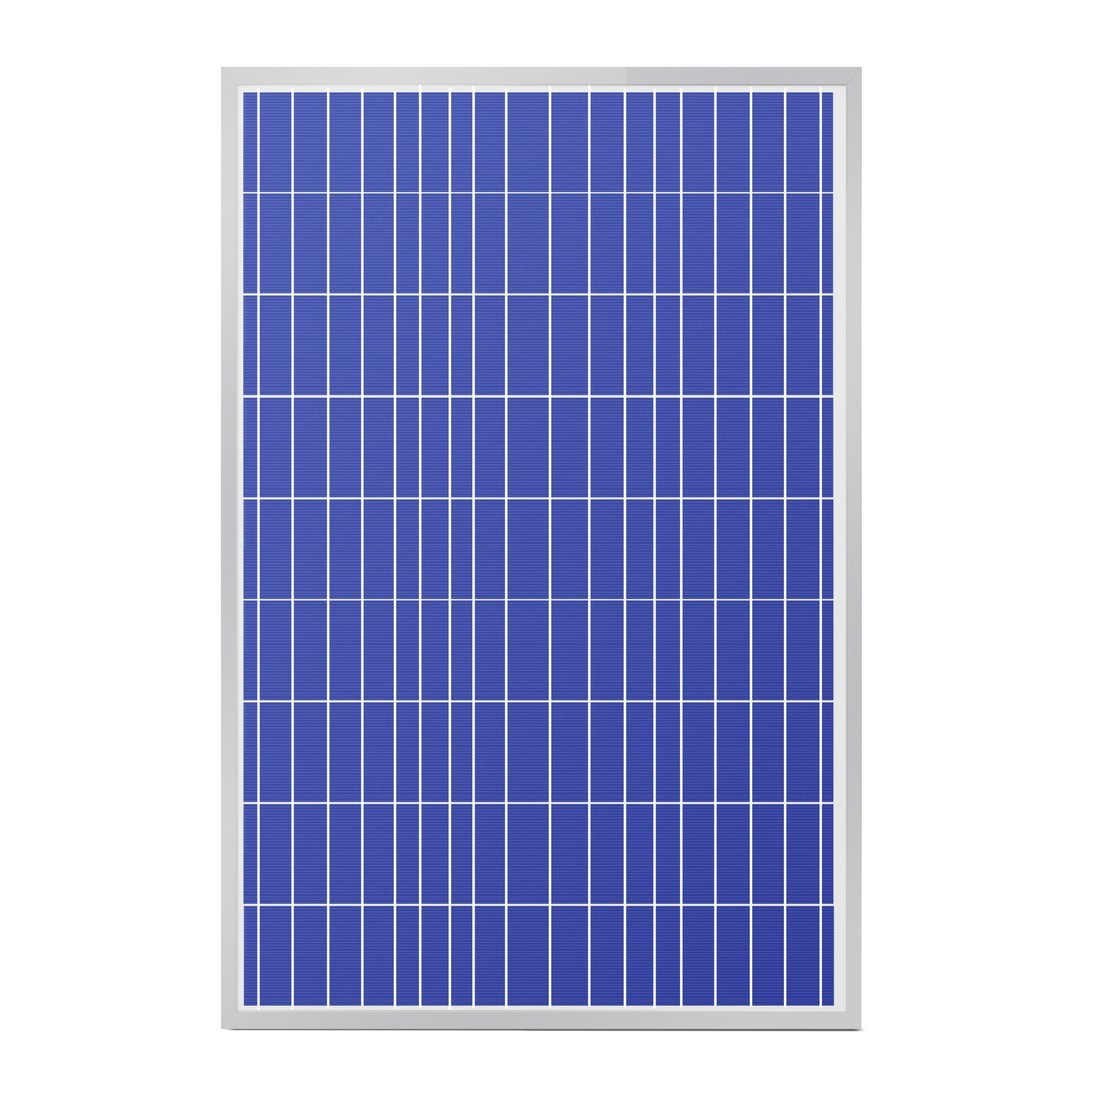 Солнечная панель поликристалическая SVC P-140 солнечные батареи